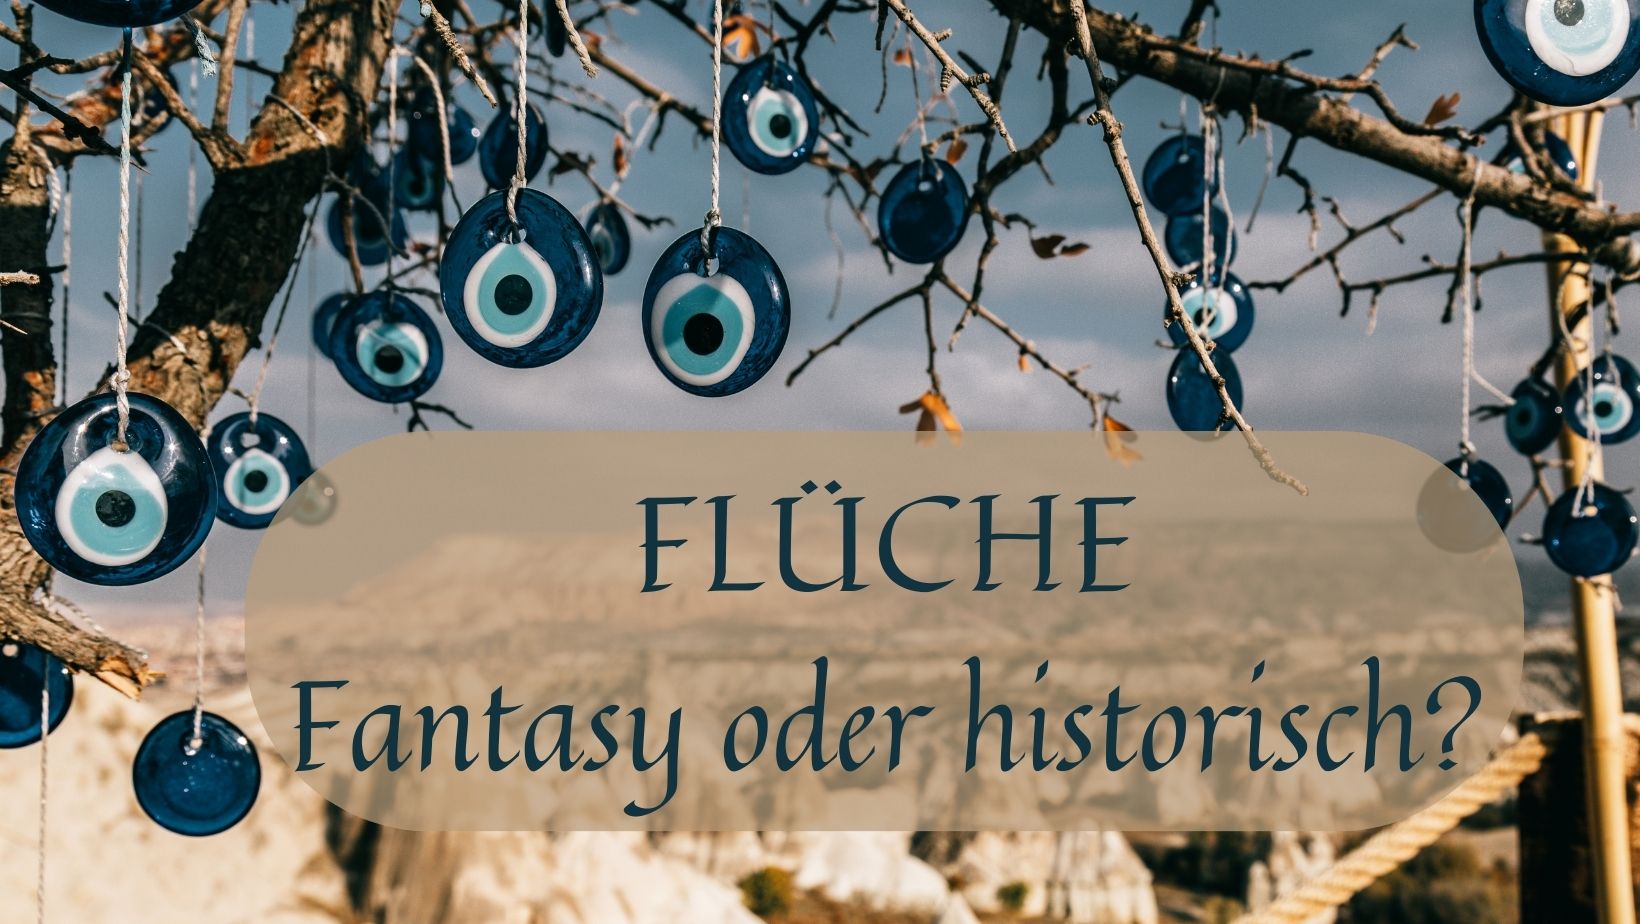 Flüche - Fantasy oder historisch?